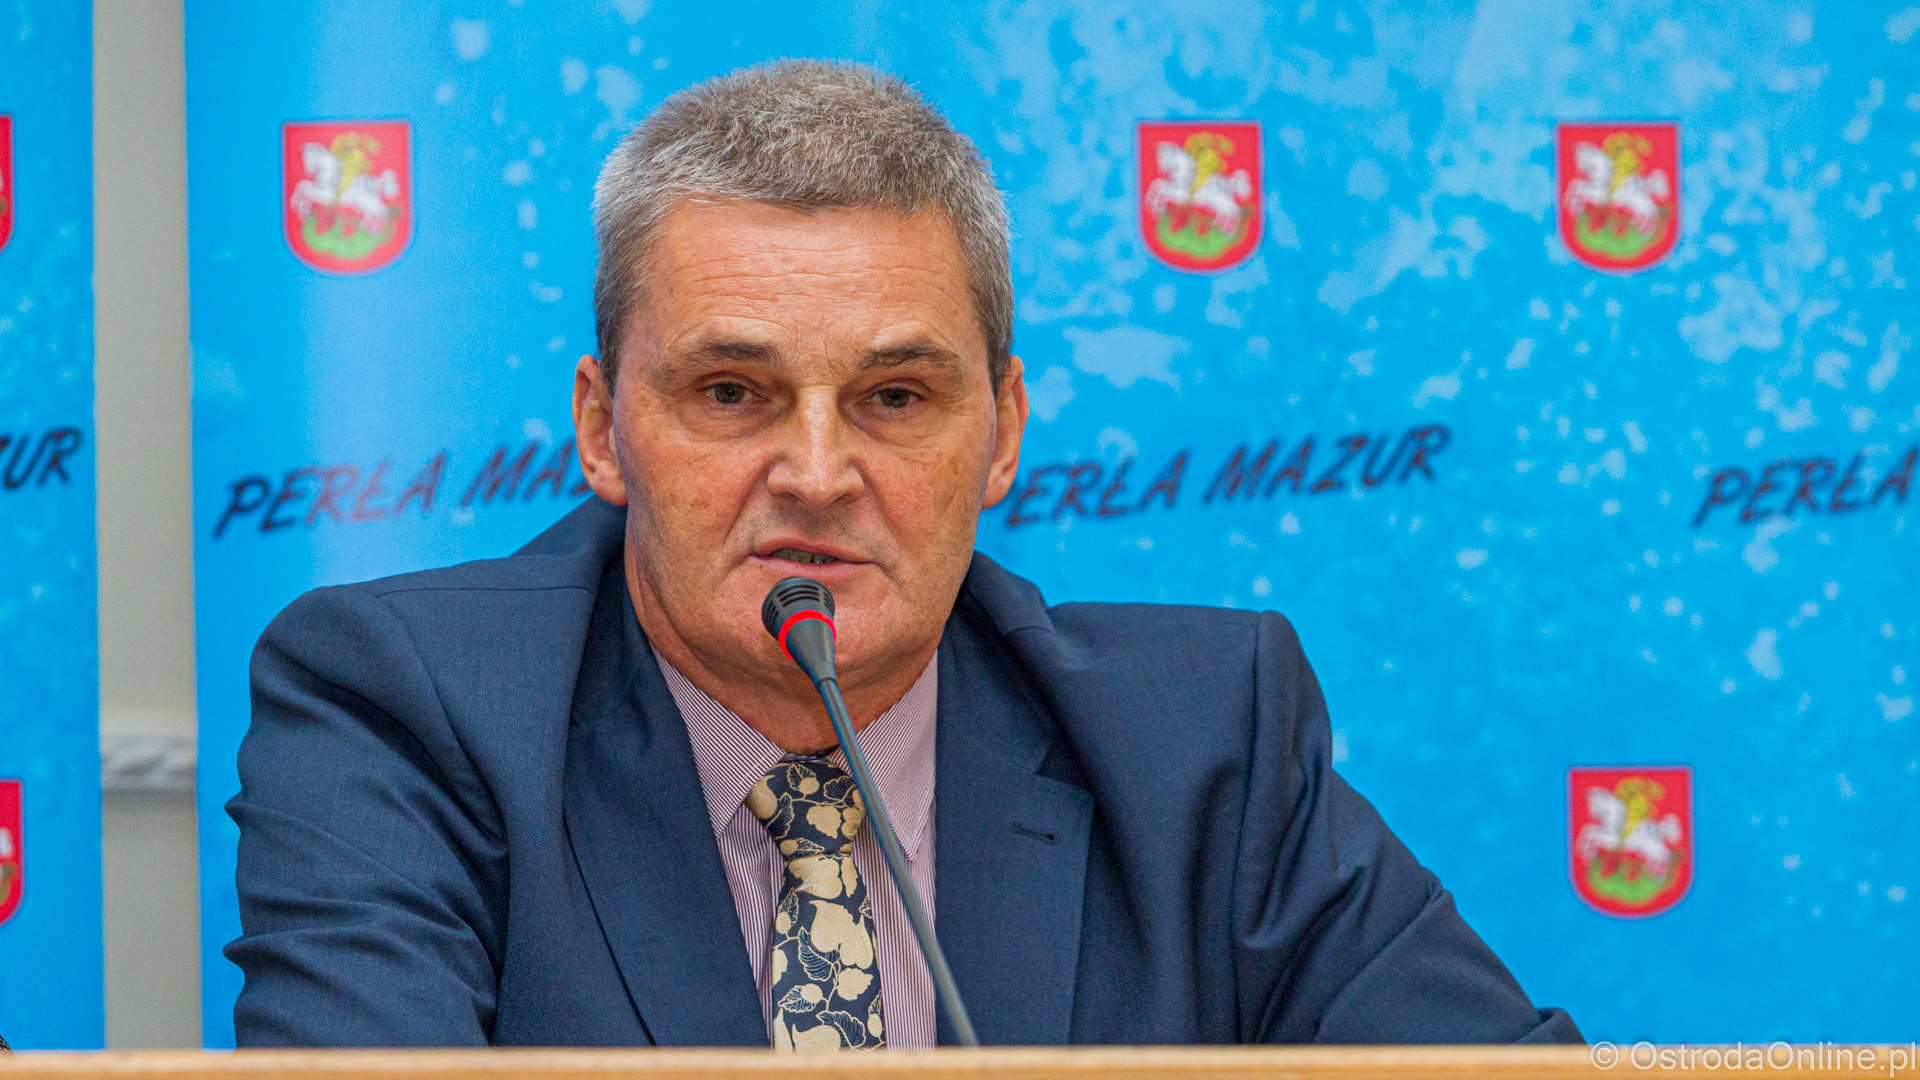 Burmistrz Ostródy Zbigniew Michalak, foto: ostrodaonline.pl